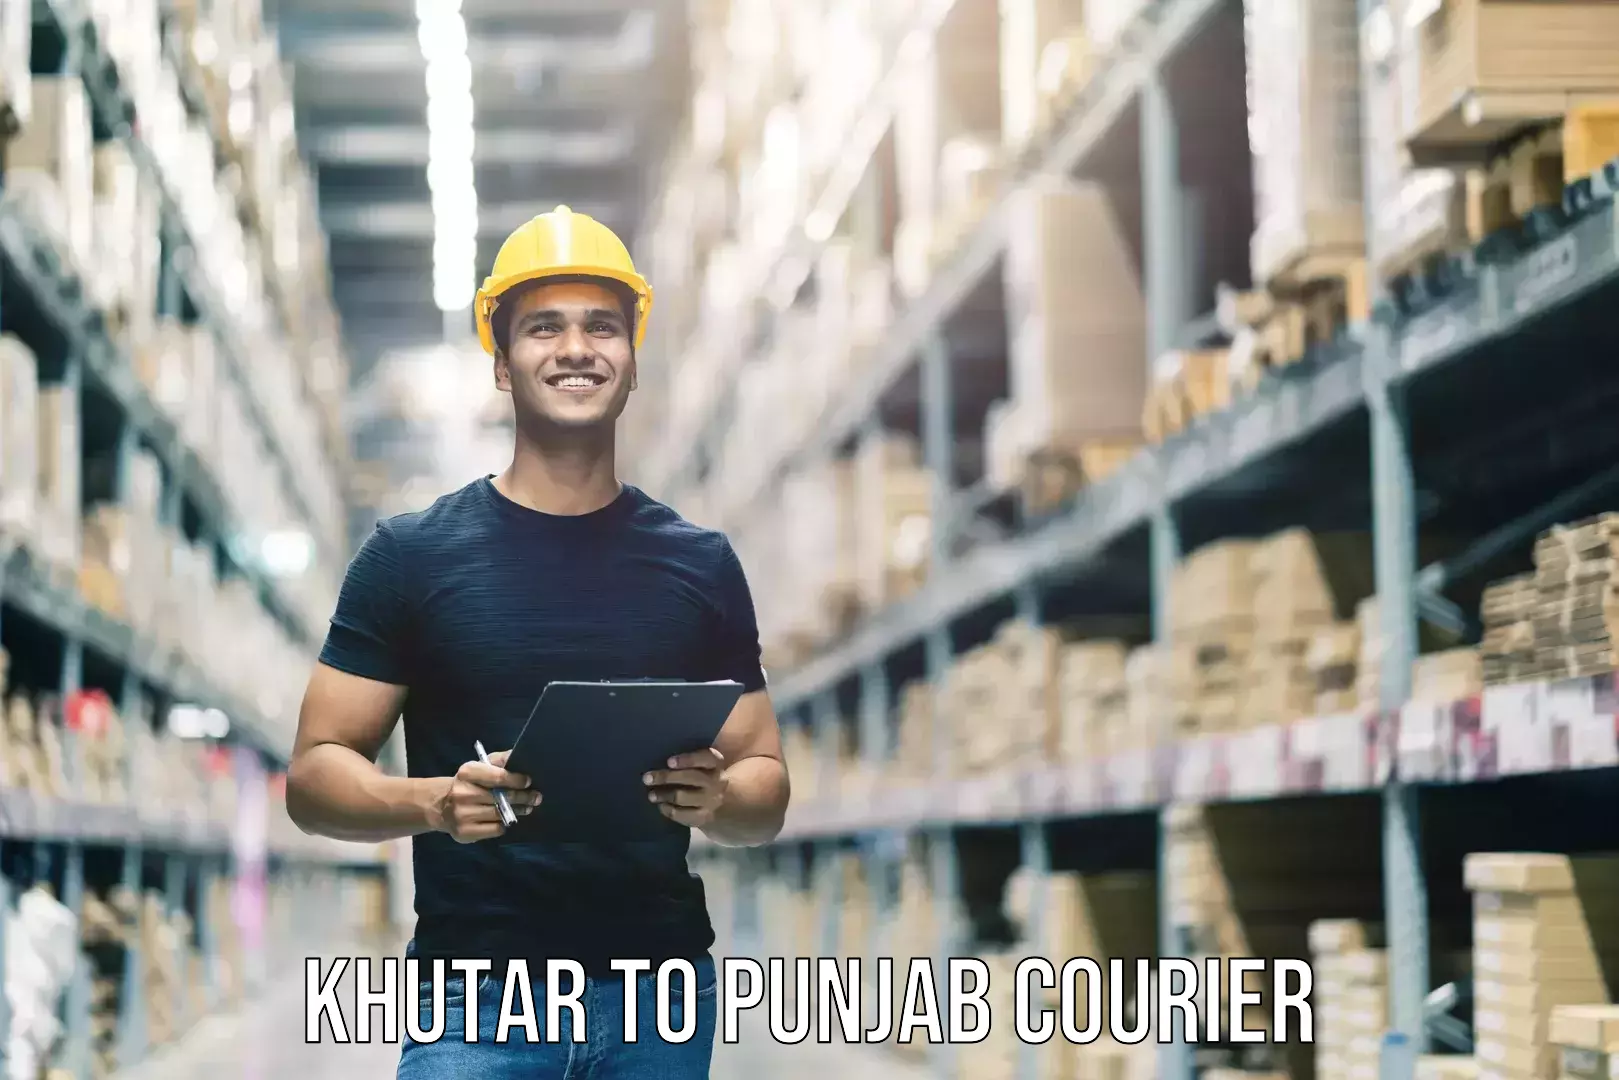 Outsize baggage transport Khutar to Punjab